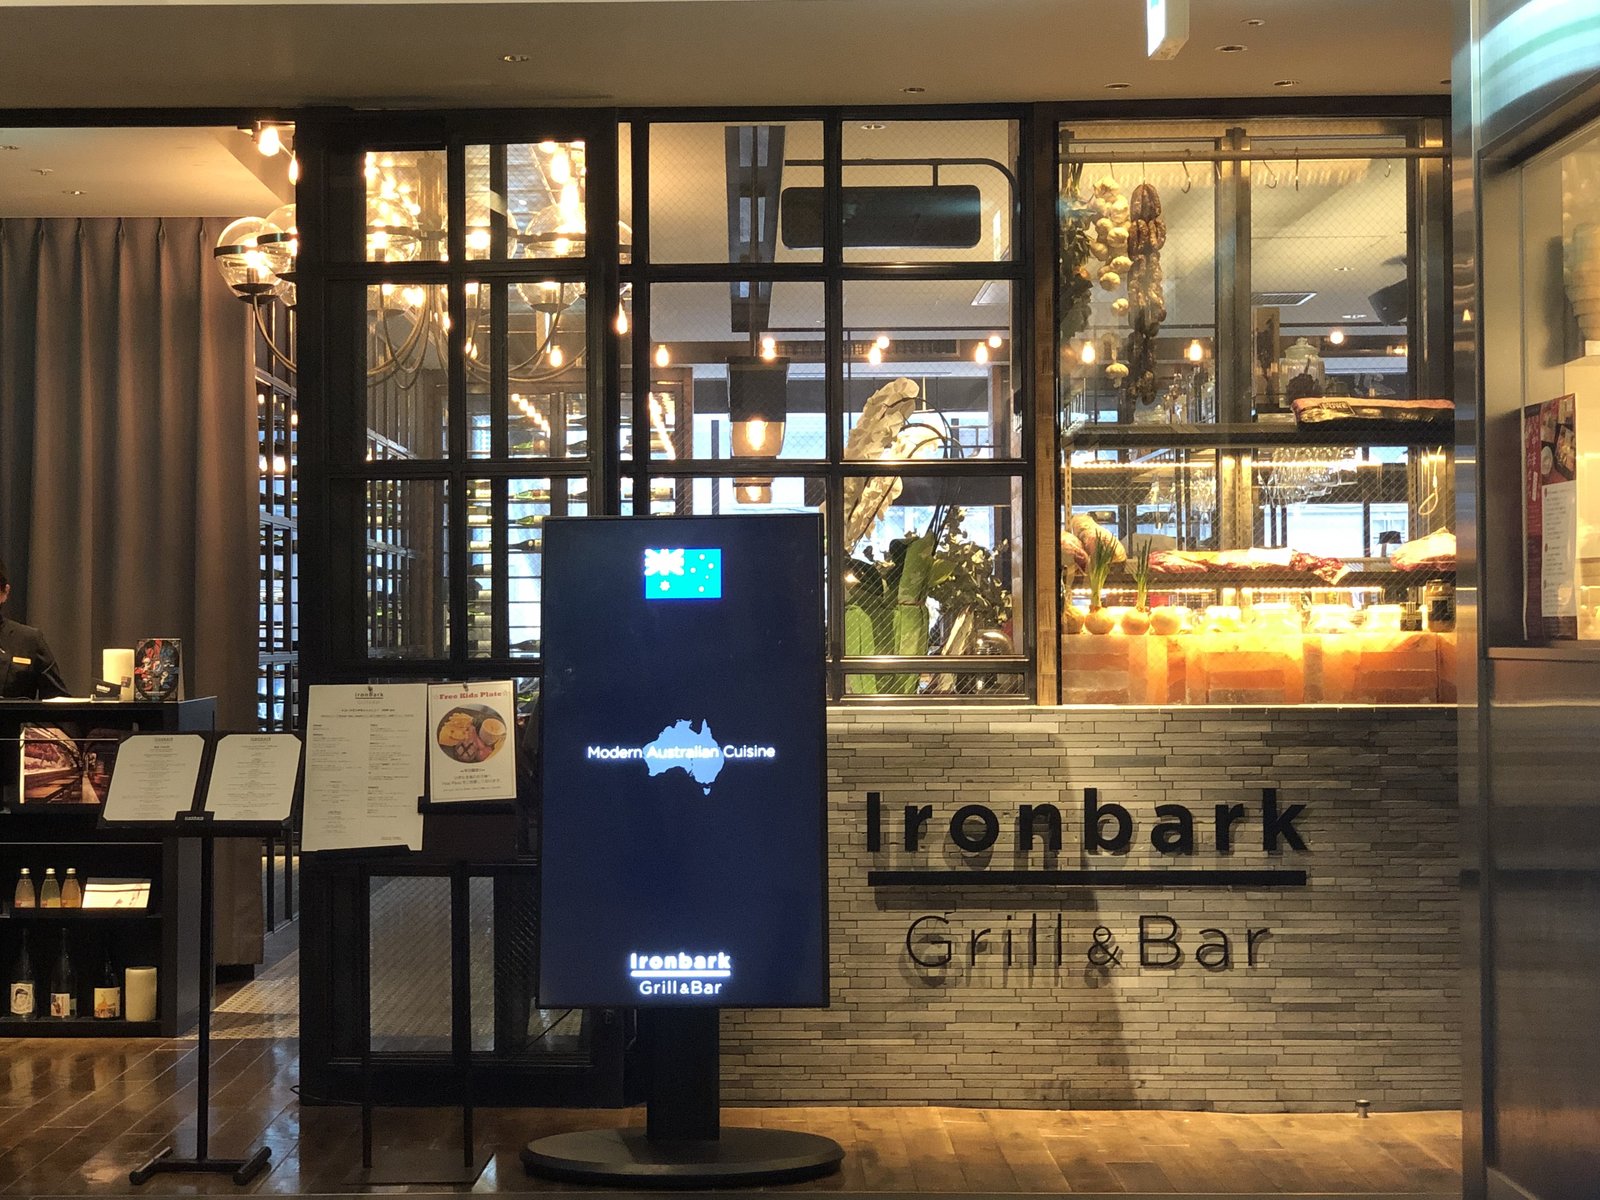 Ironbark Grill & Bar